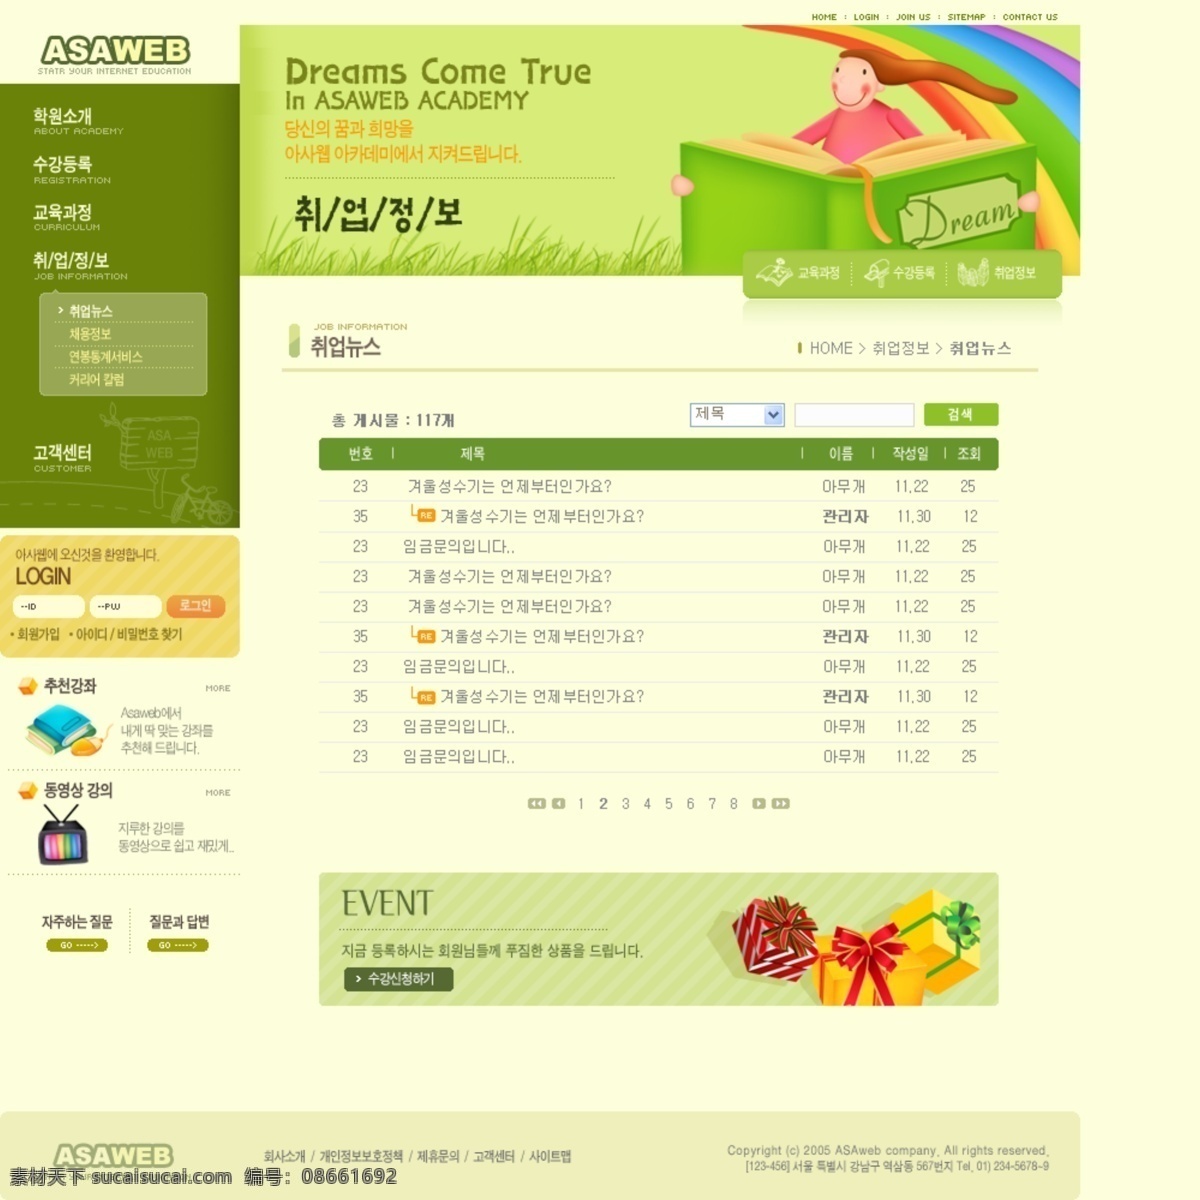 网页 模版 分层 韩国模板 韩国网页模板 网页模板 网页模版 源文件 个人博客设计 网页素材